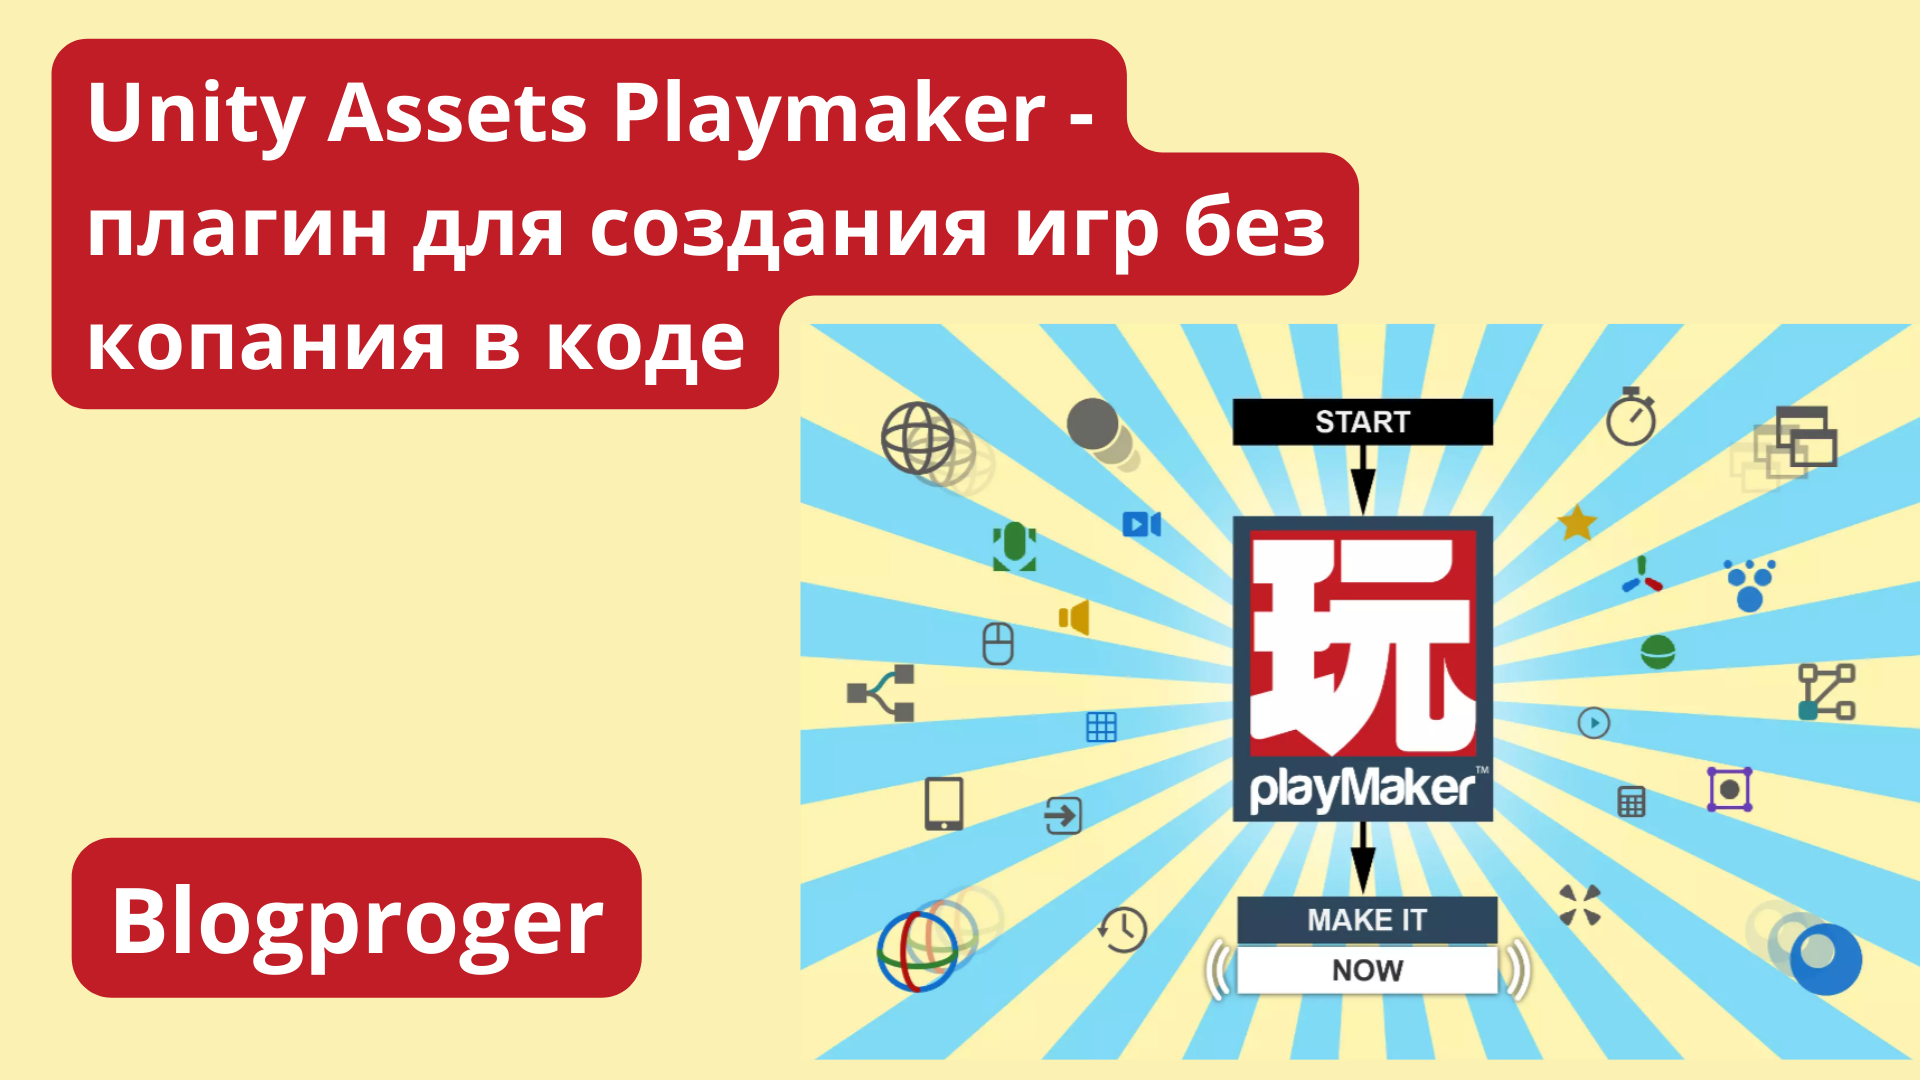 Unity Assets Playmaker - плагин для создания игр без копания в коде